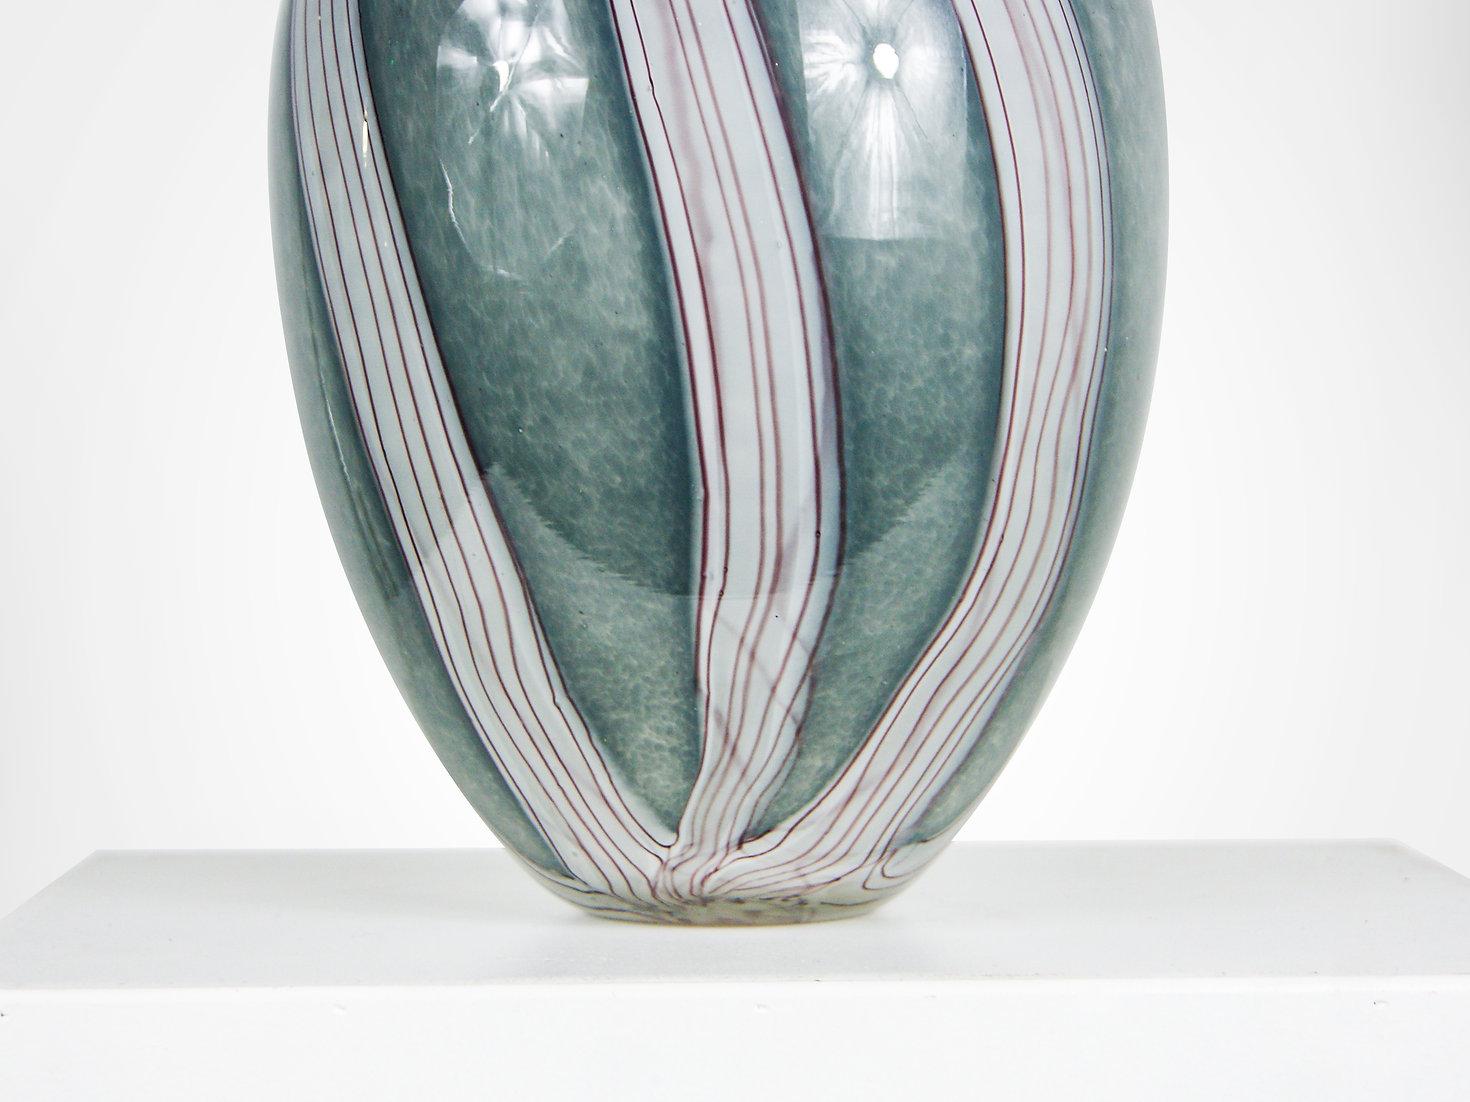 Riesige Murano-Sommerso-Glasvase von Luigi Onesto, ca. 1950er Jahre.
Ungewöhnliche klobige und schwere Glasvase in trüber silbergrauer Farbe. 
Mit einem untergetauchten Kern aus weißer Lava, der von dünnen roten Streifen durchzogen ist. Das Innere